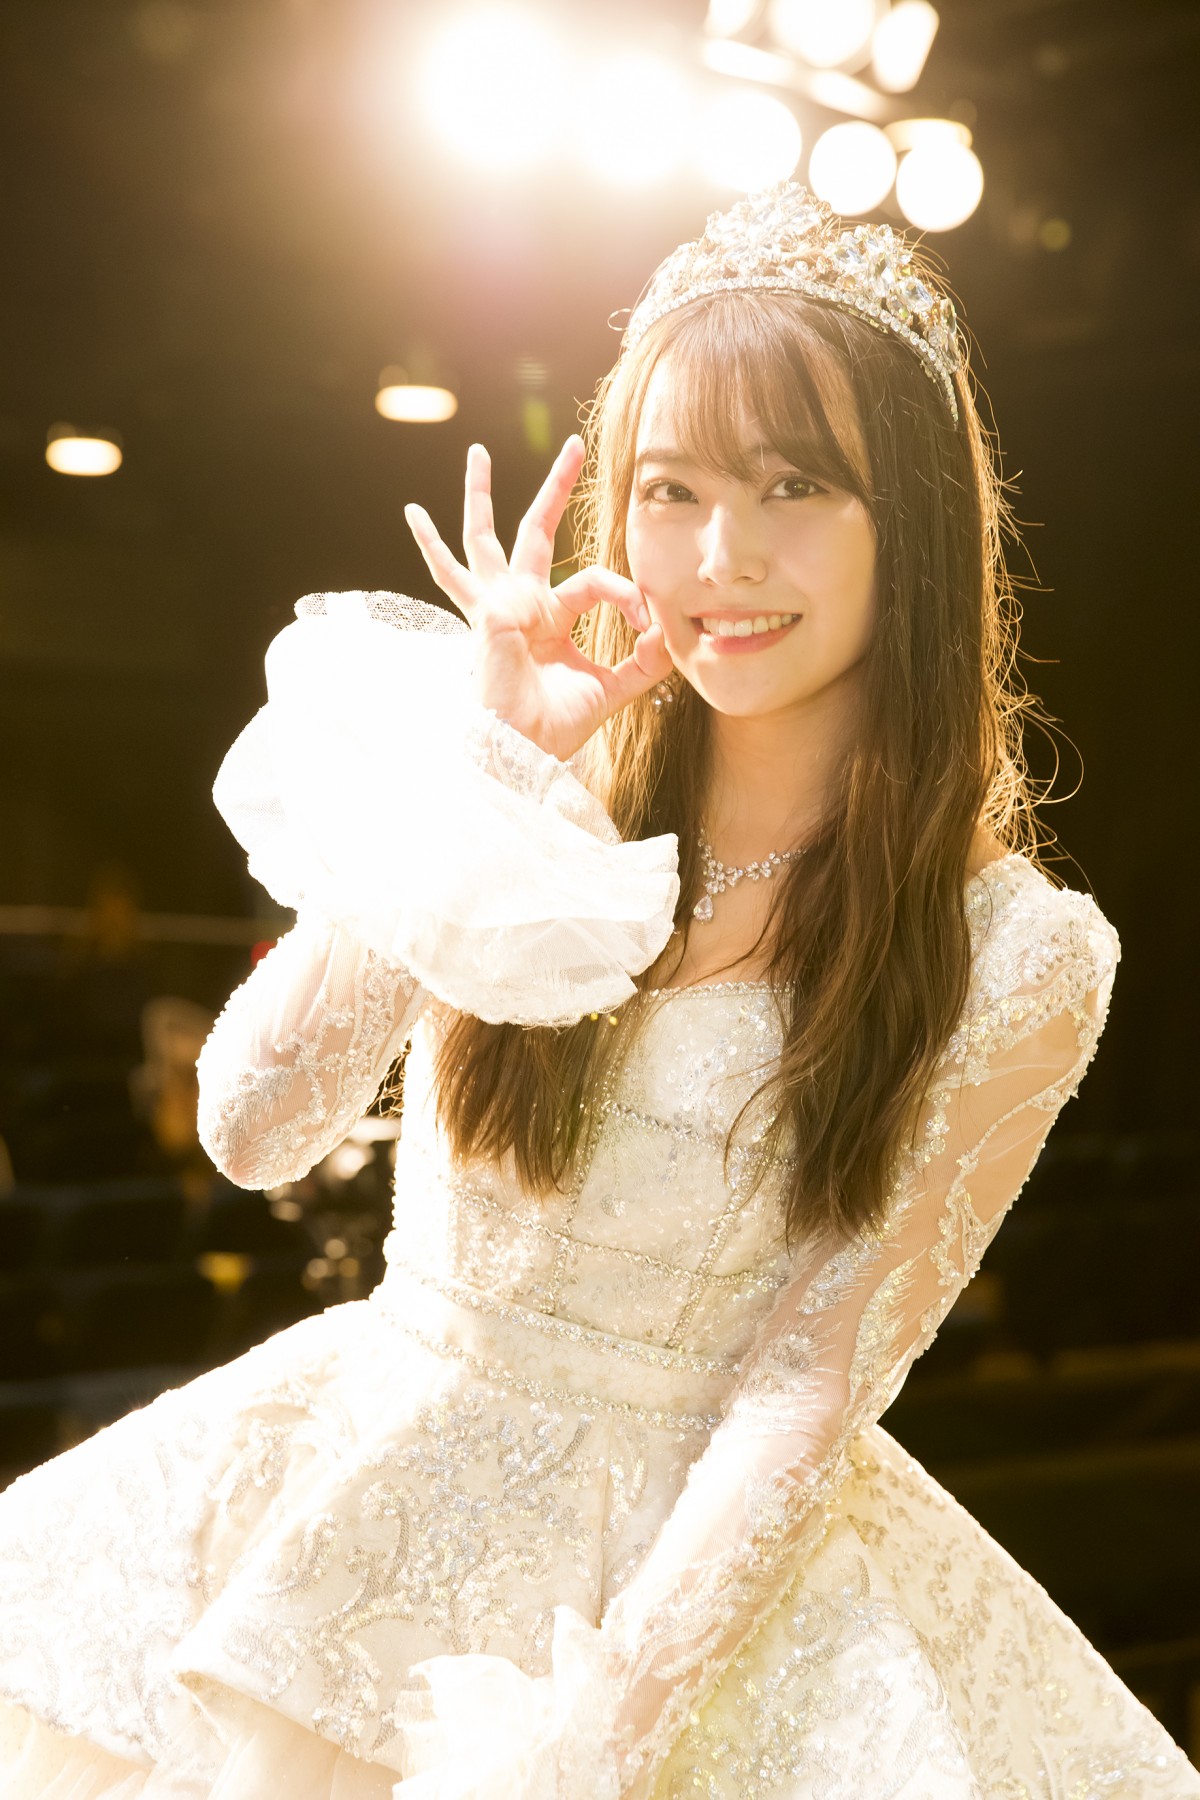 NMB48白間美瑠「皆さんの笑顔をずっと守り続けます」卒業公演で11年の 